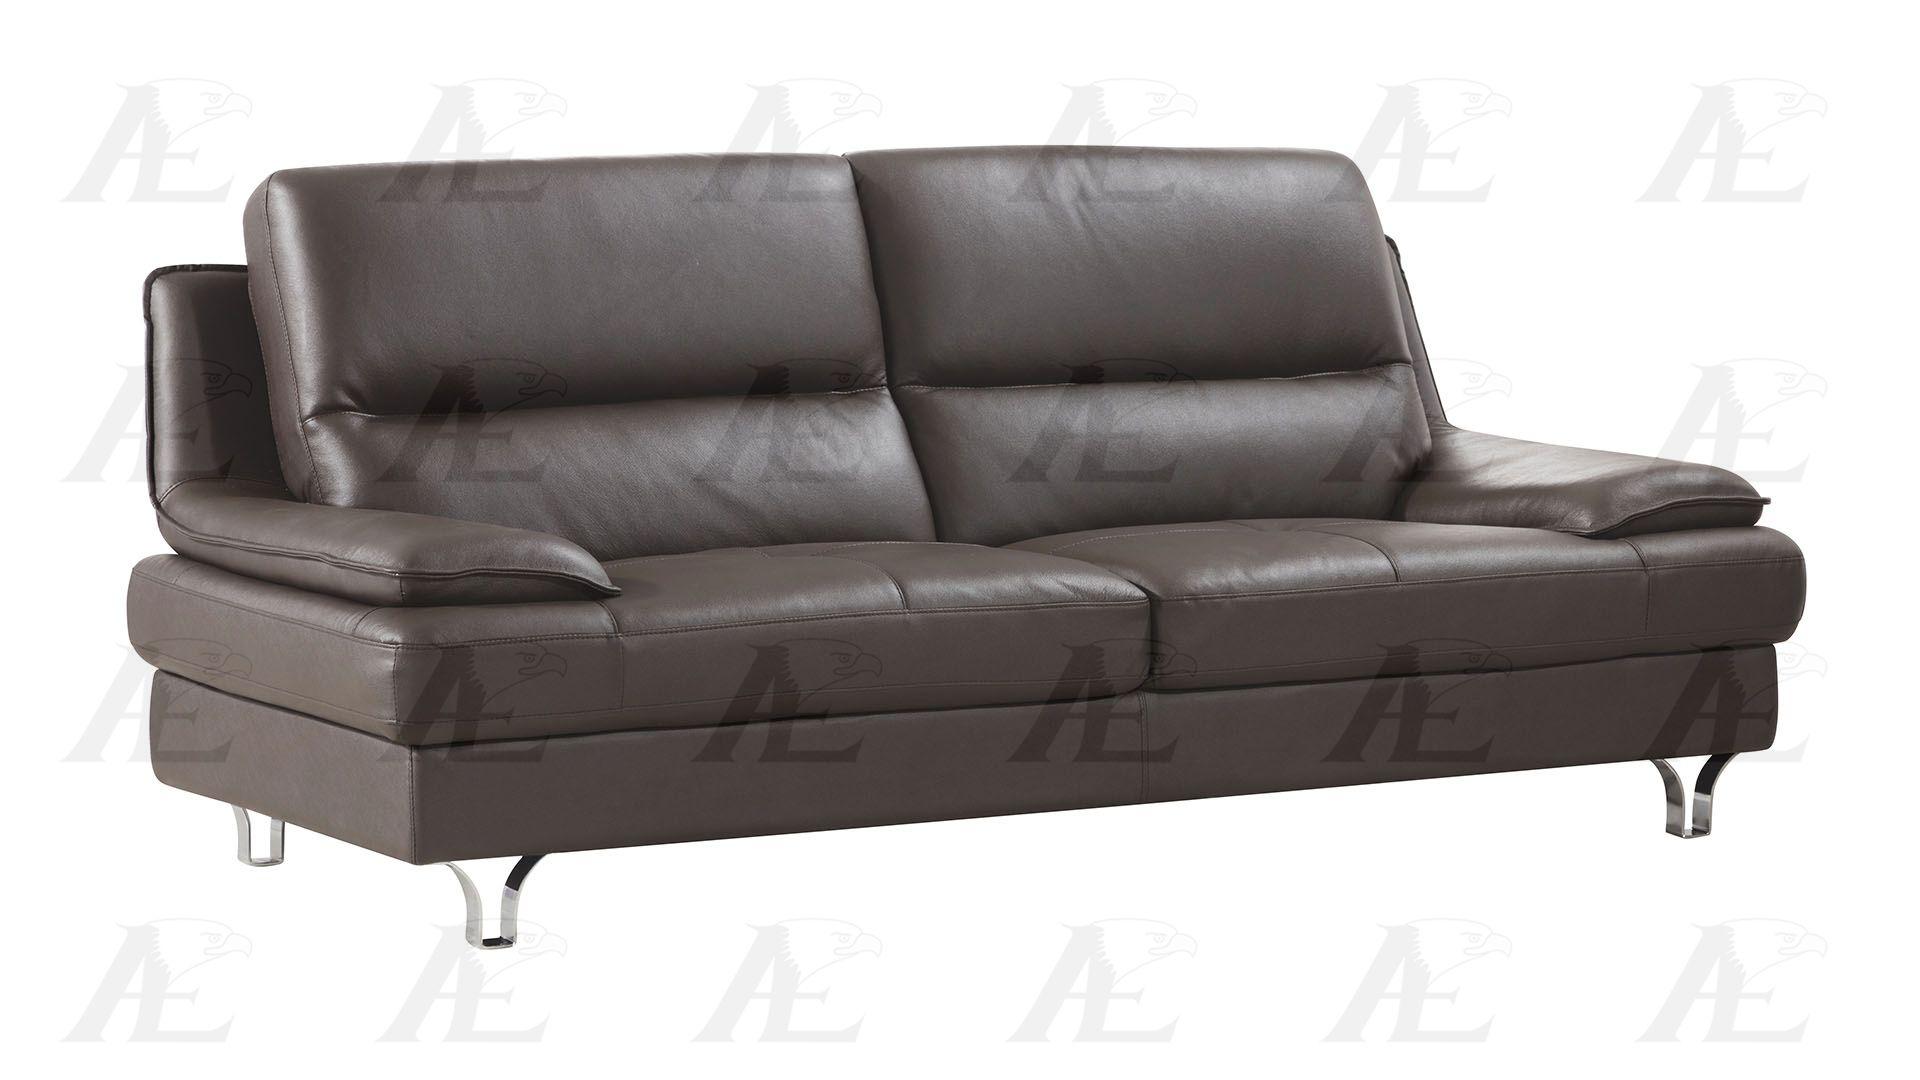 

    
American Eagle Furniture EK-B109-DC-SET Sofa Set Dark Chocolate EK-B109-DC-SET
